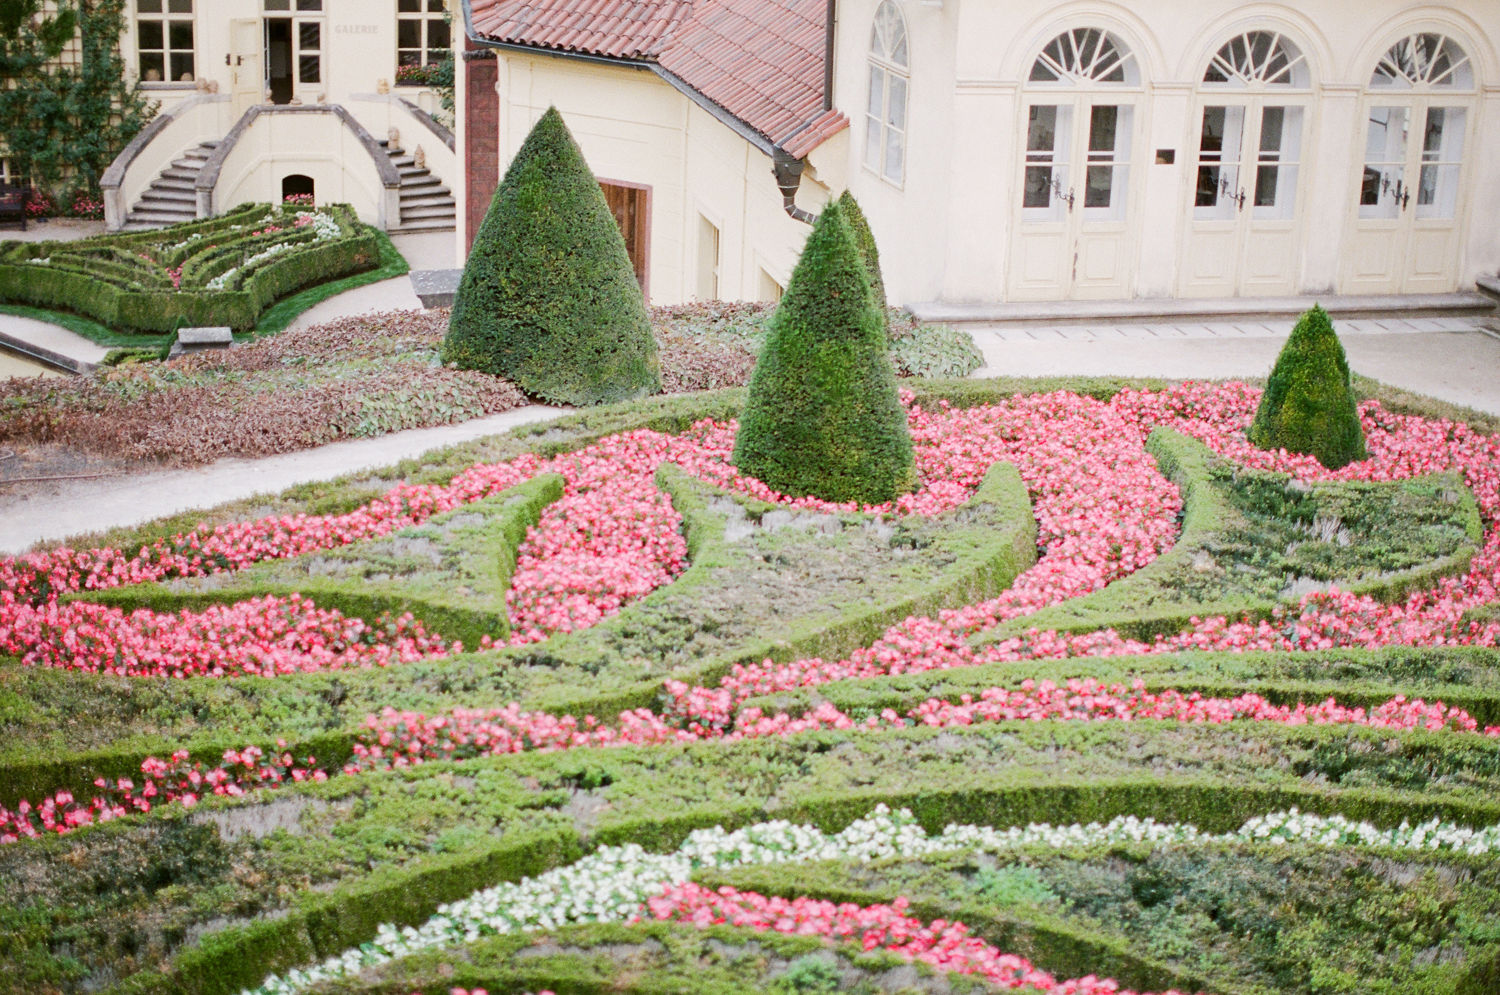 Vrtba Gardens - Weddings in Prague - Julie May